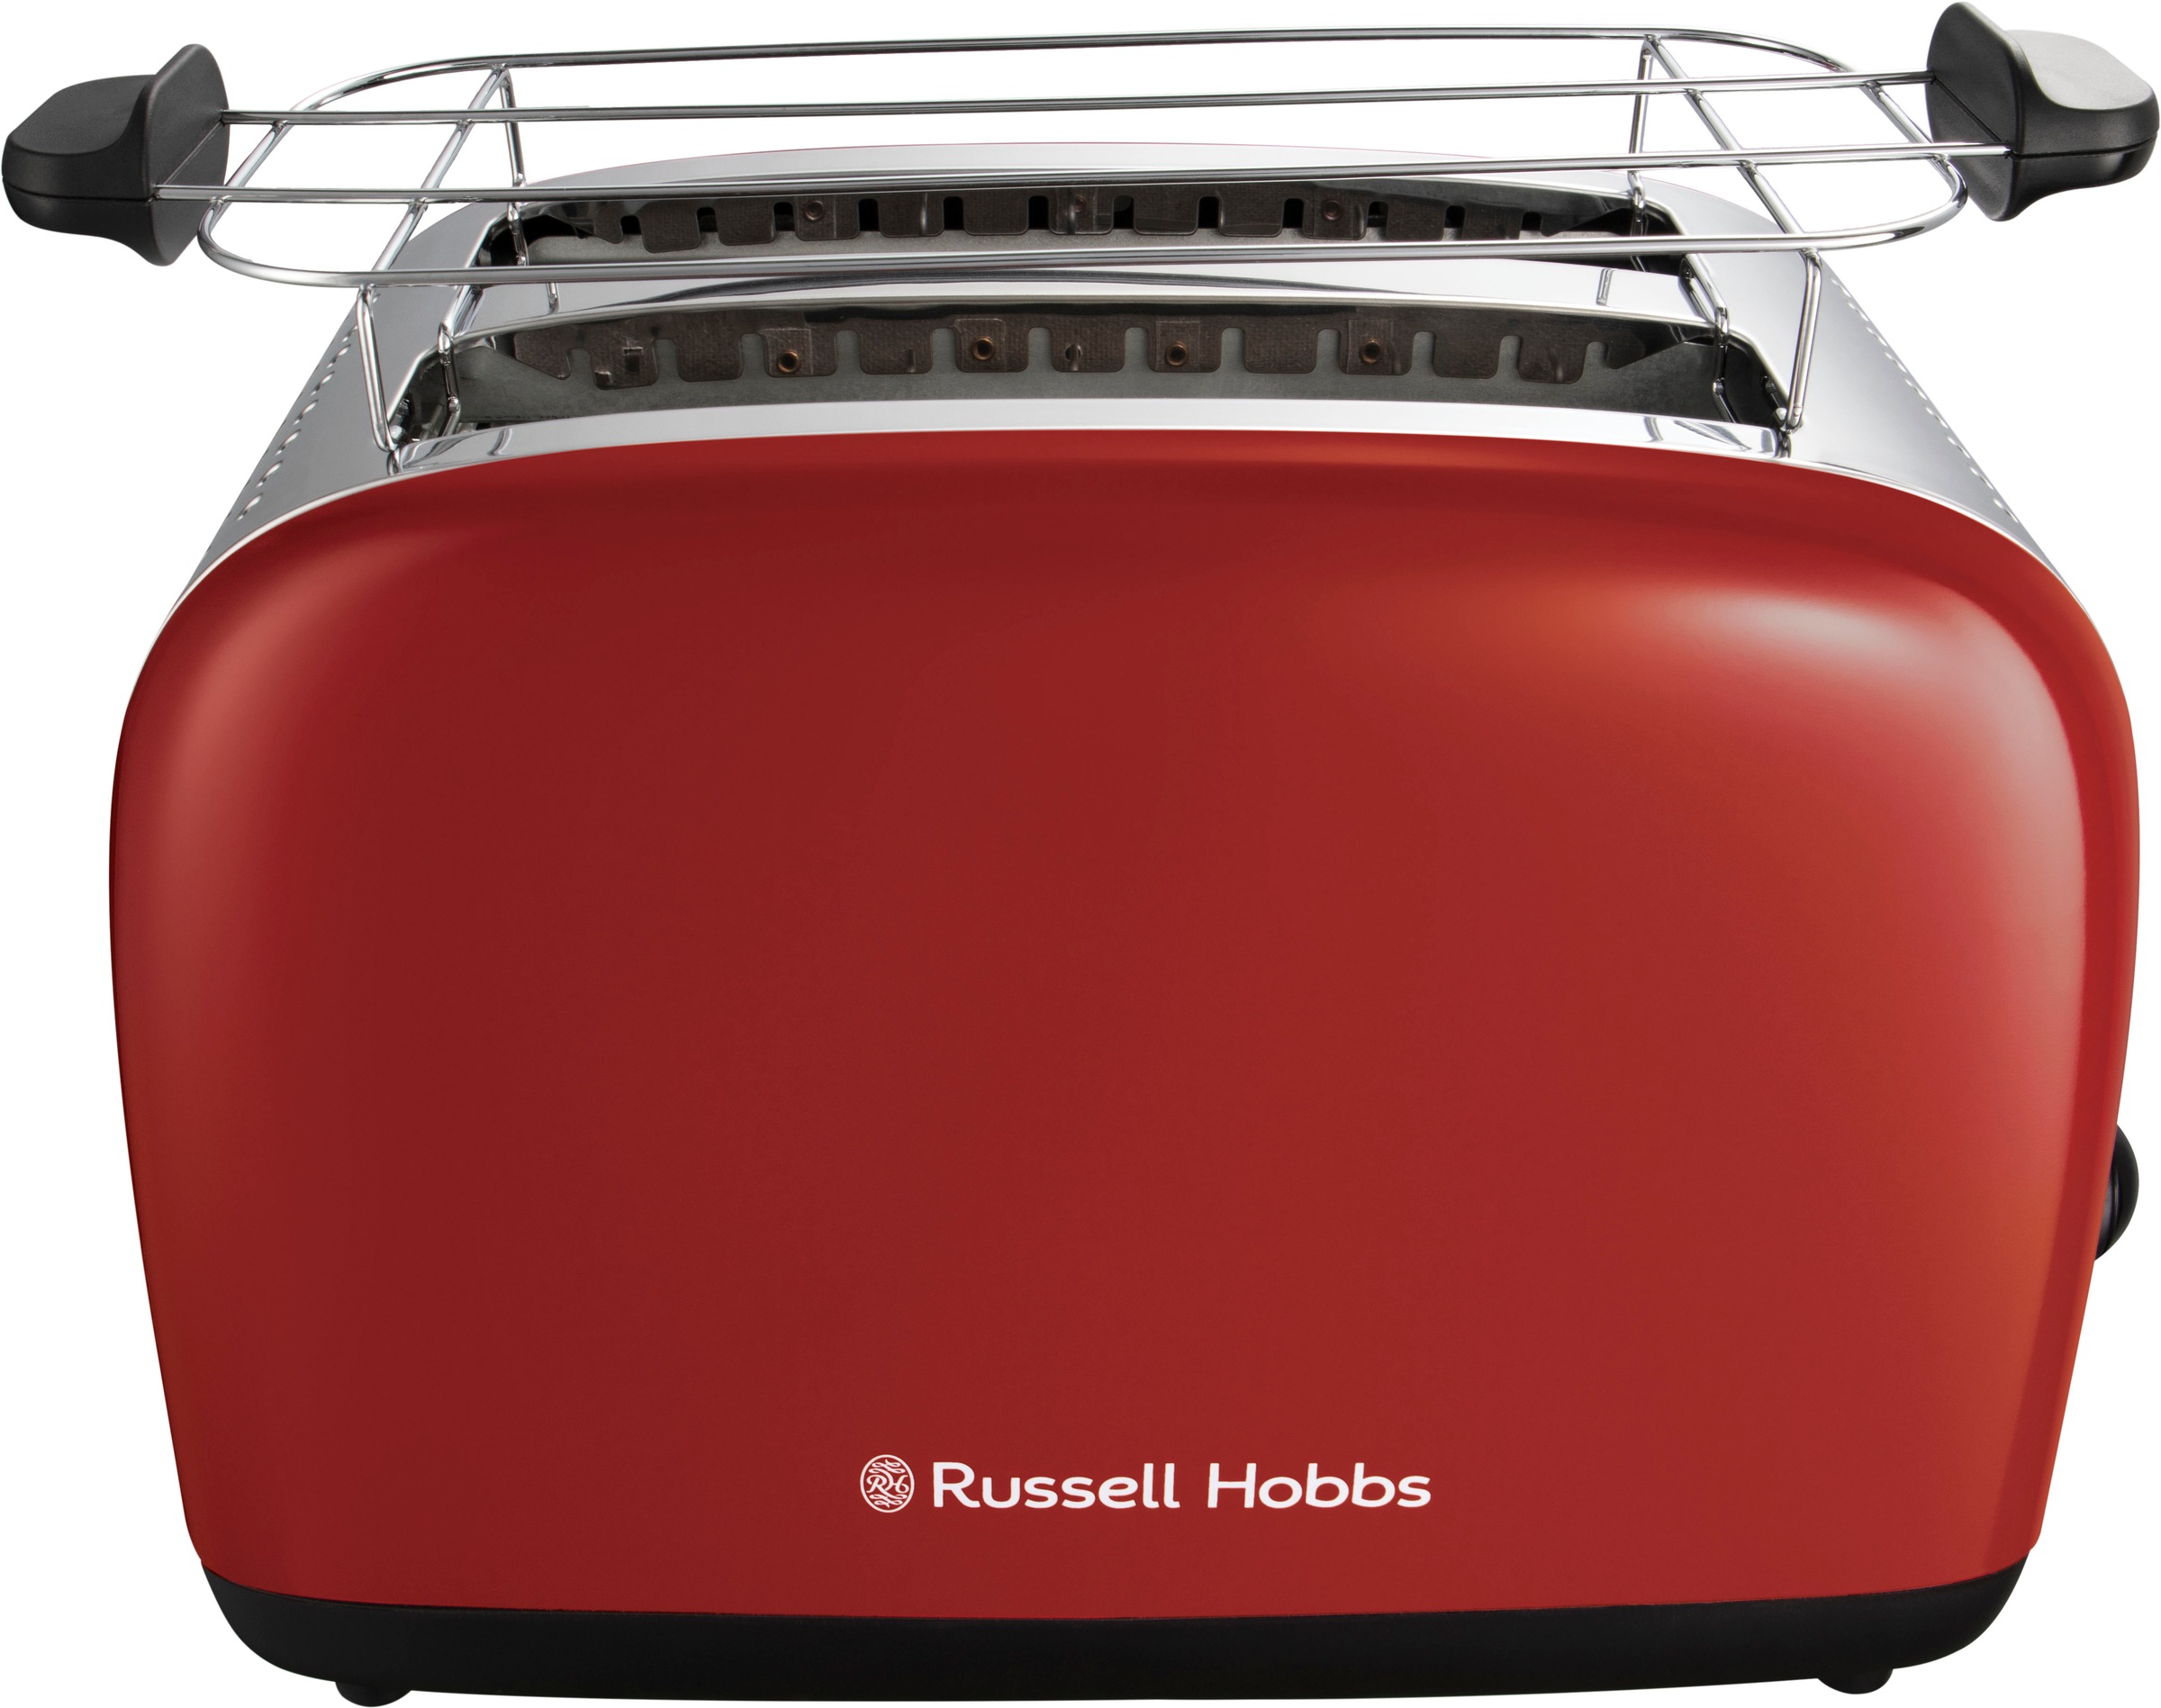 RUSSELL HOBBS Toaster »Colours Plus 26554-56«, 2 lange Schlitze, für 2 Scheiben, 1600 W